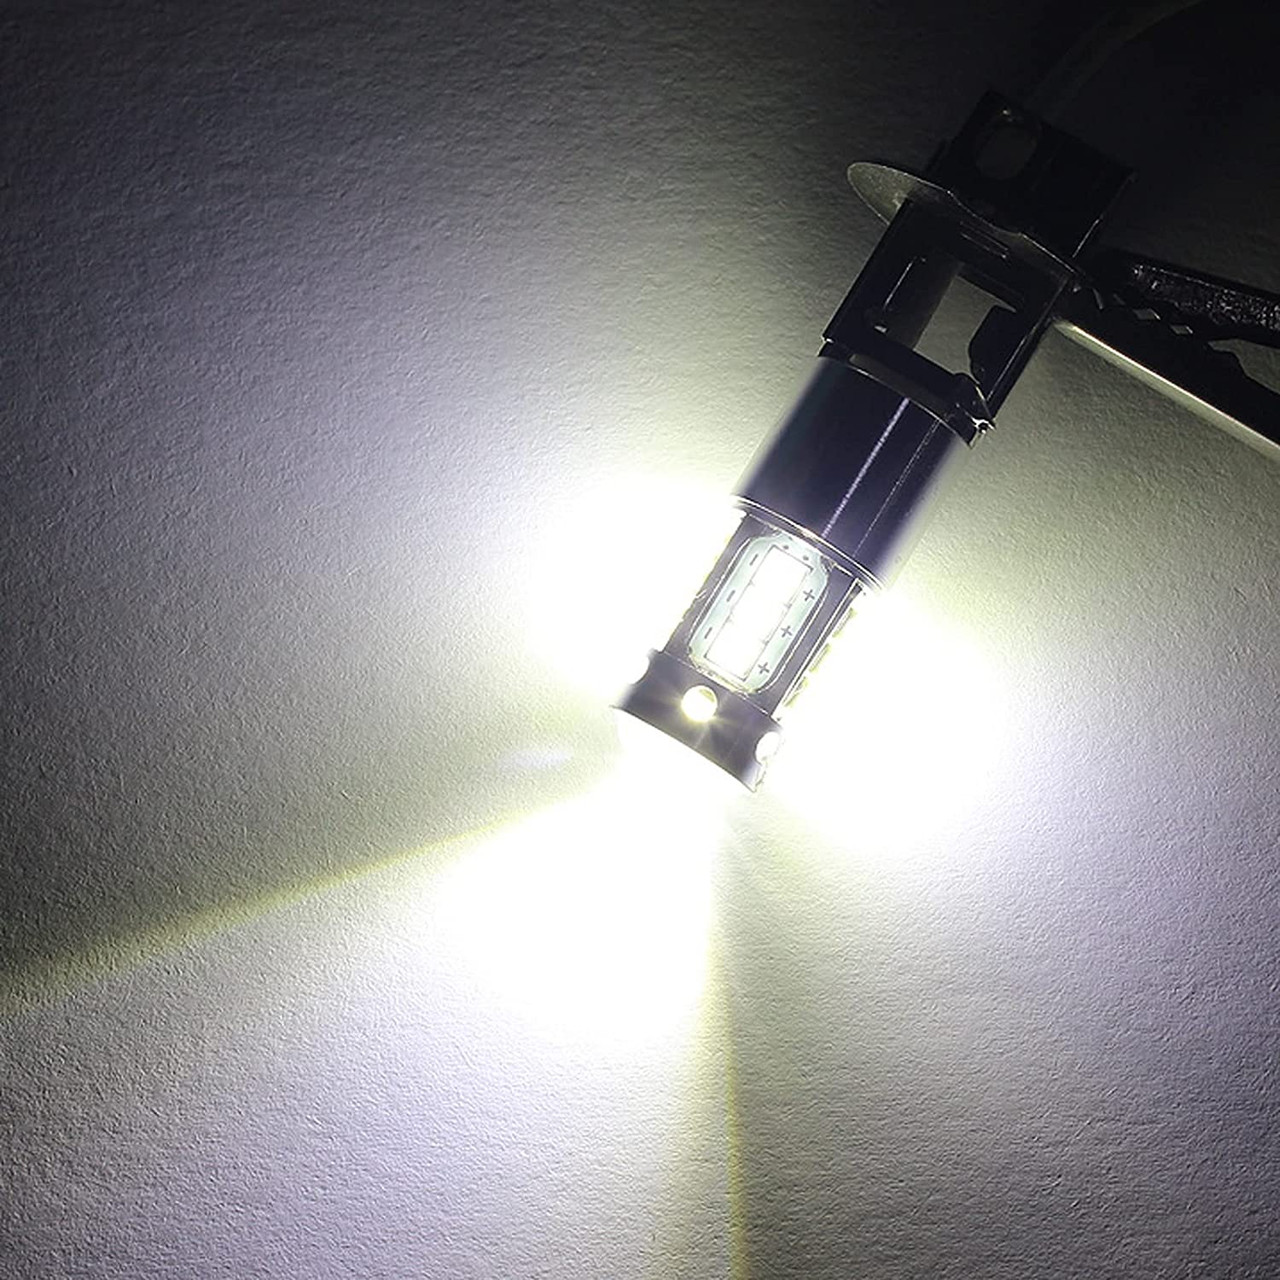 JEVA - Light Bulb - 12-24V, 100W, 16 LED, 1200lm, White, 6500K (H3LED1224V) - Apollo Lighting